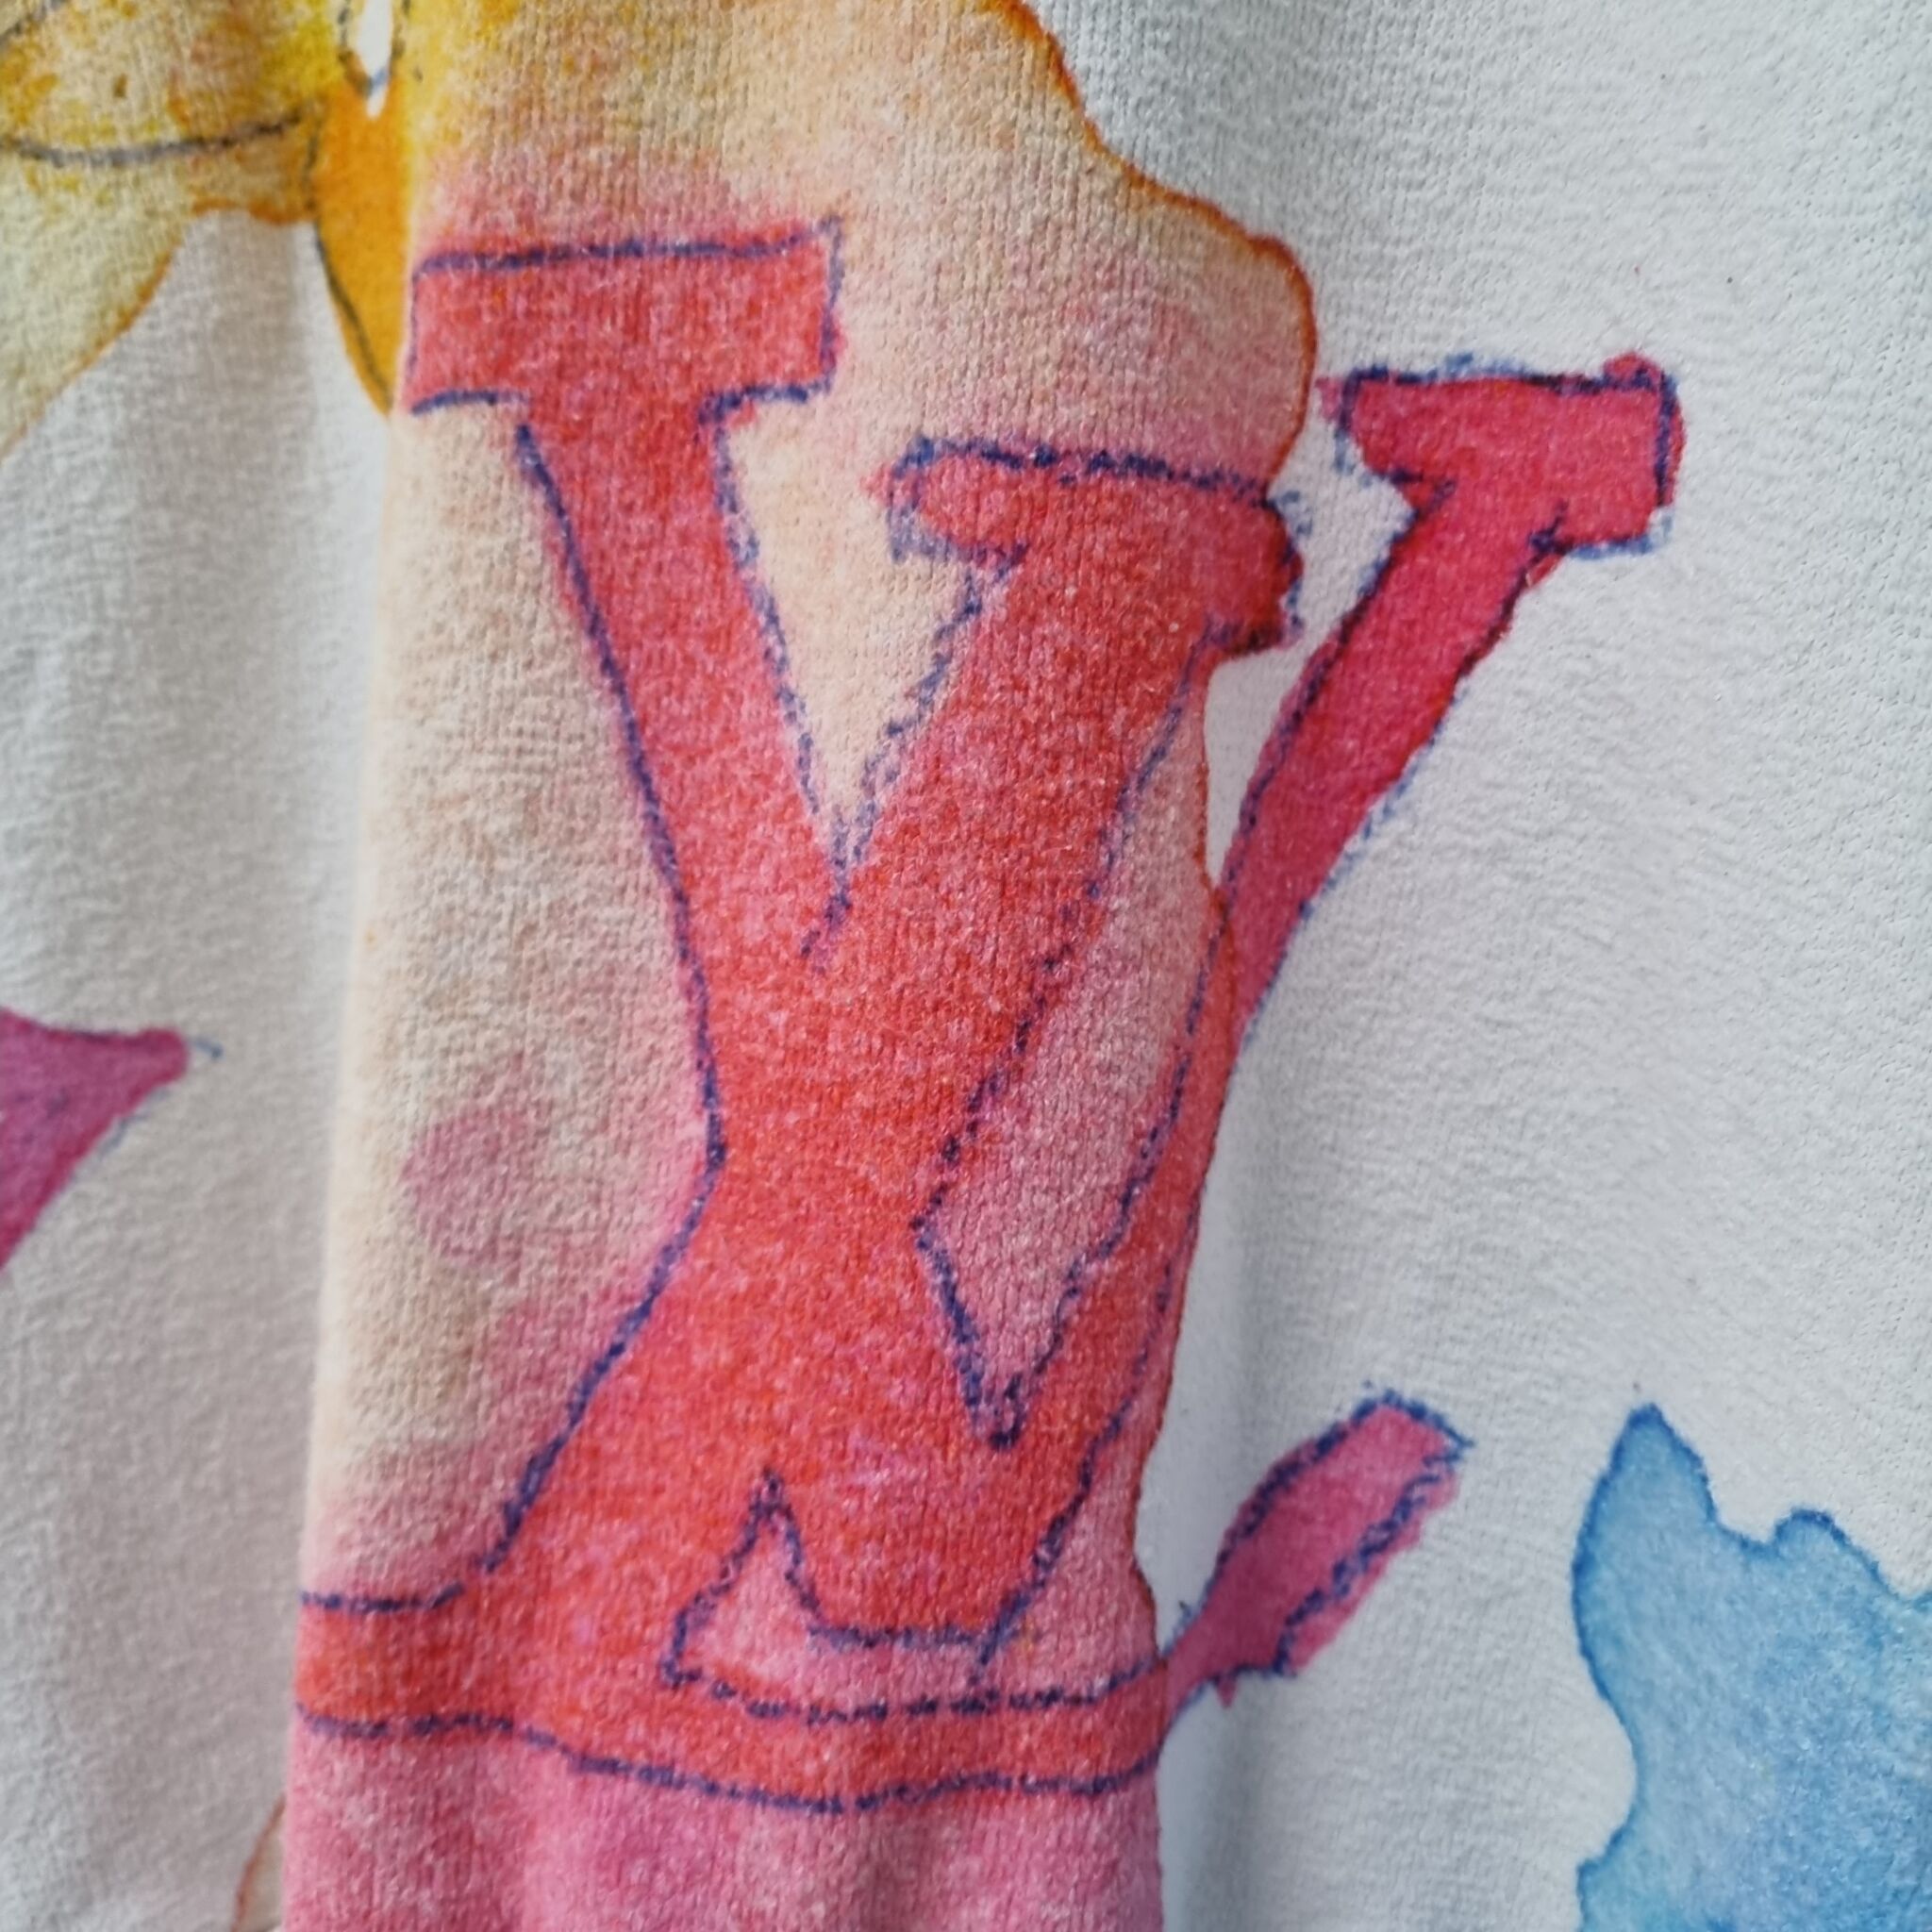 Louis Vuitton Men's Watercolor Giant Monogram Crewneck Sweatshirt Cotton  Blend Multicolor 15881626